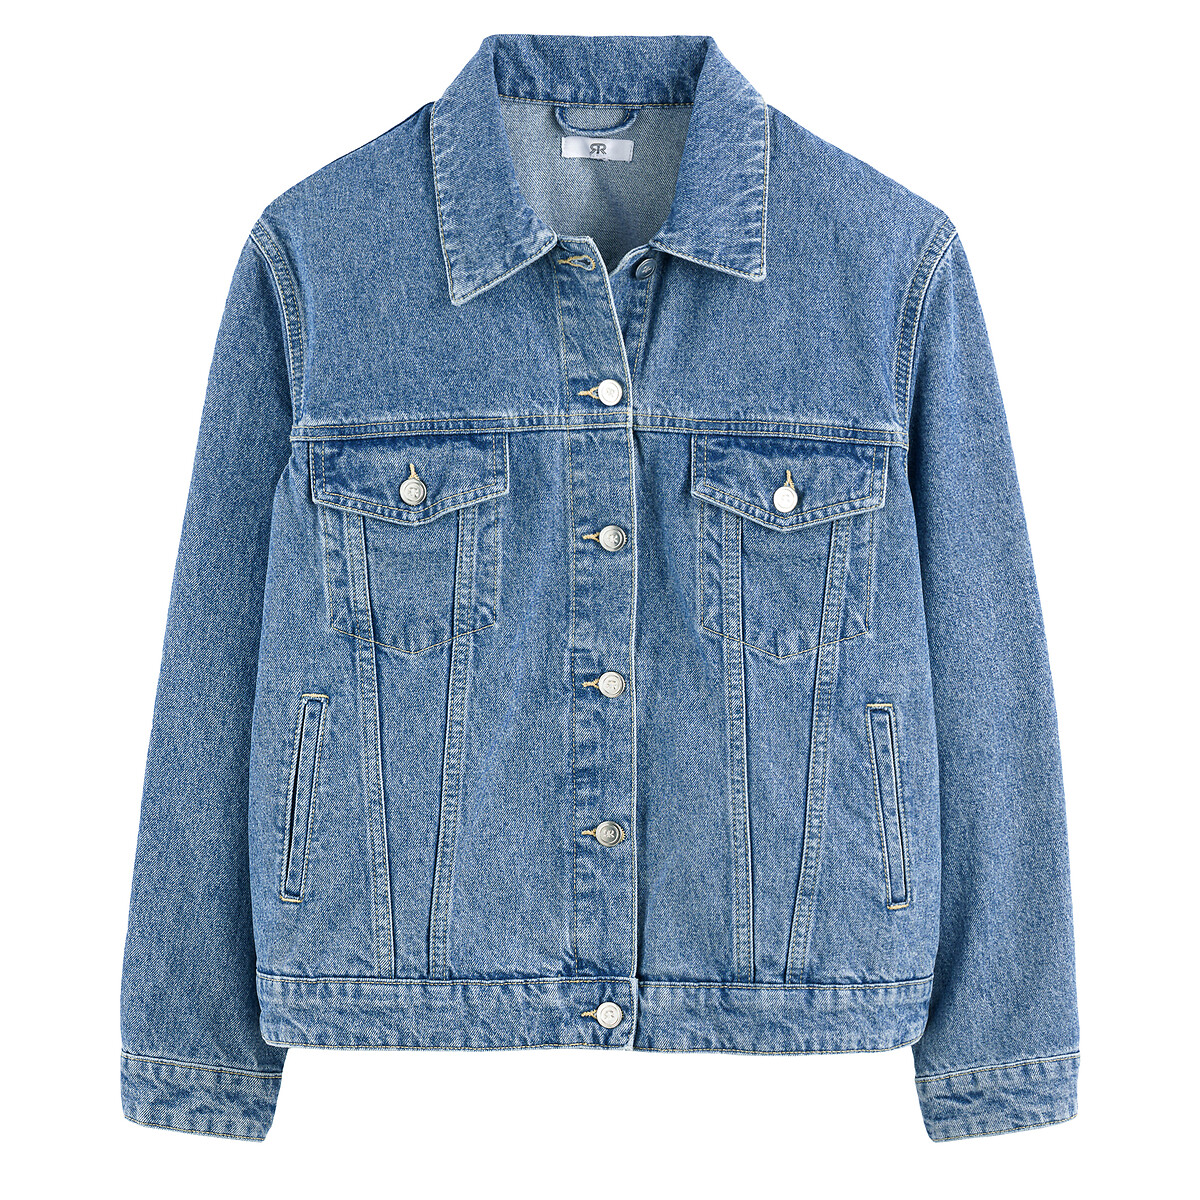 Куртка Из джинсовой ткани широкого покроя 44 (FR) - 50 (RUS) синий LaRedoute, размер 44 (FR) - 50 (RUS) Куртка Из джинсовой ткани широкого покроя 44 (FR) - 50 (RUS) синий - фото 5